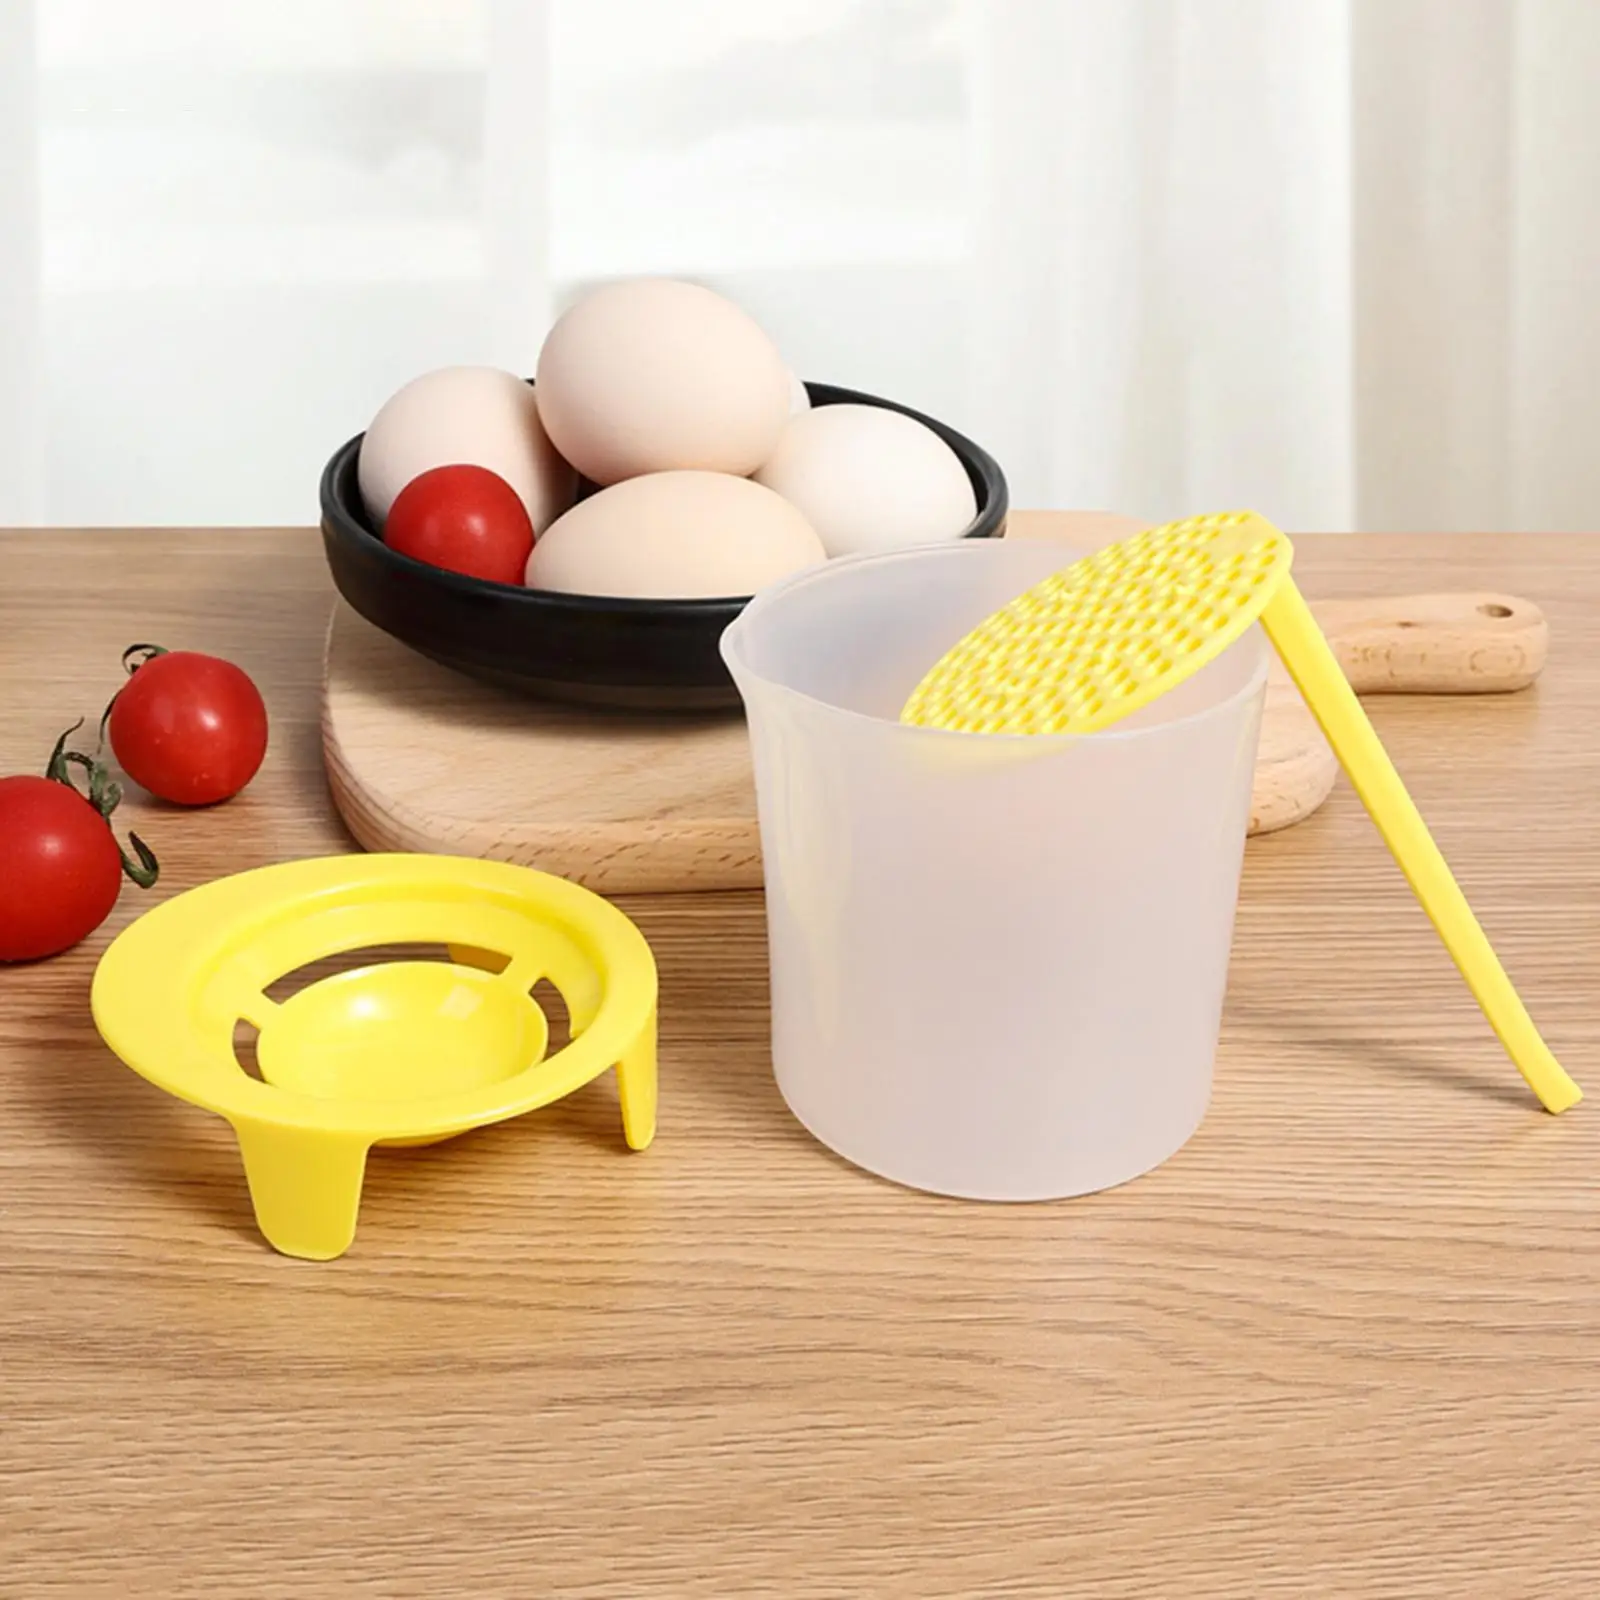 Egg Separator Cream Foame Egg White Separation Egg Fluff y Manual Egg-Beating Household Baking Tools for Home Kitchen